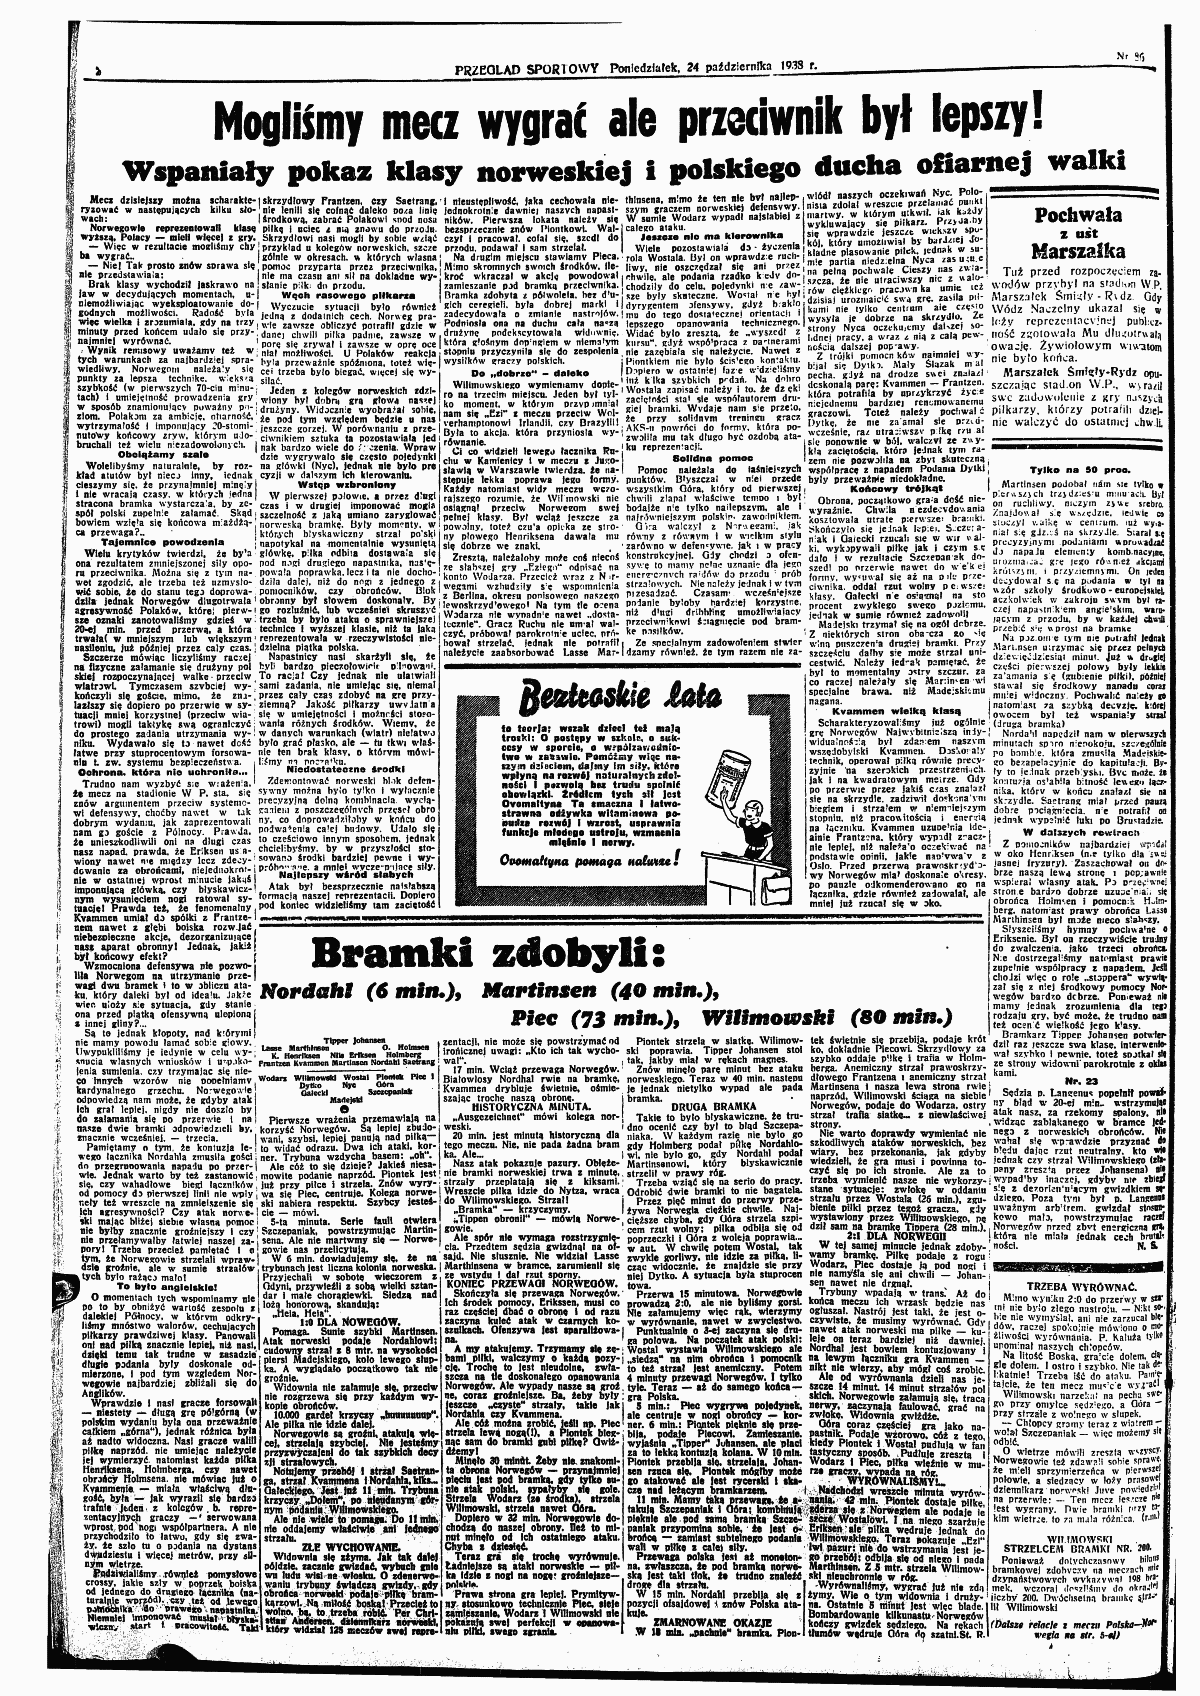 Przeglad Sportowy nr 86 z 24.10.1938 s. 2